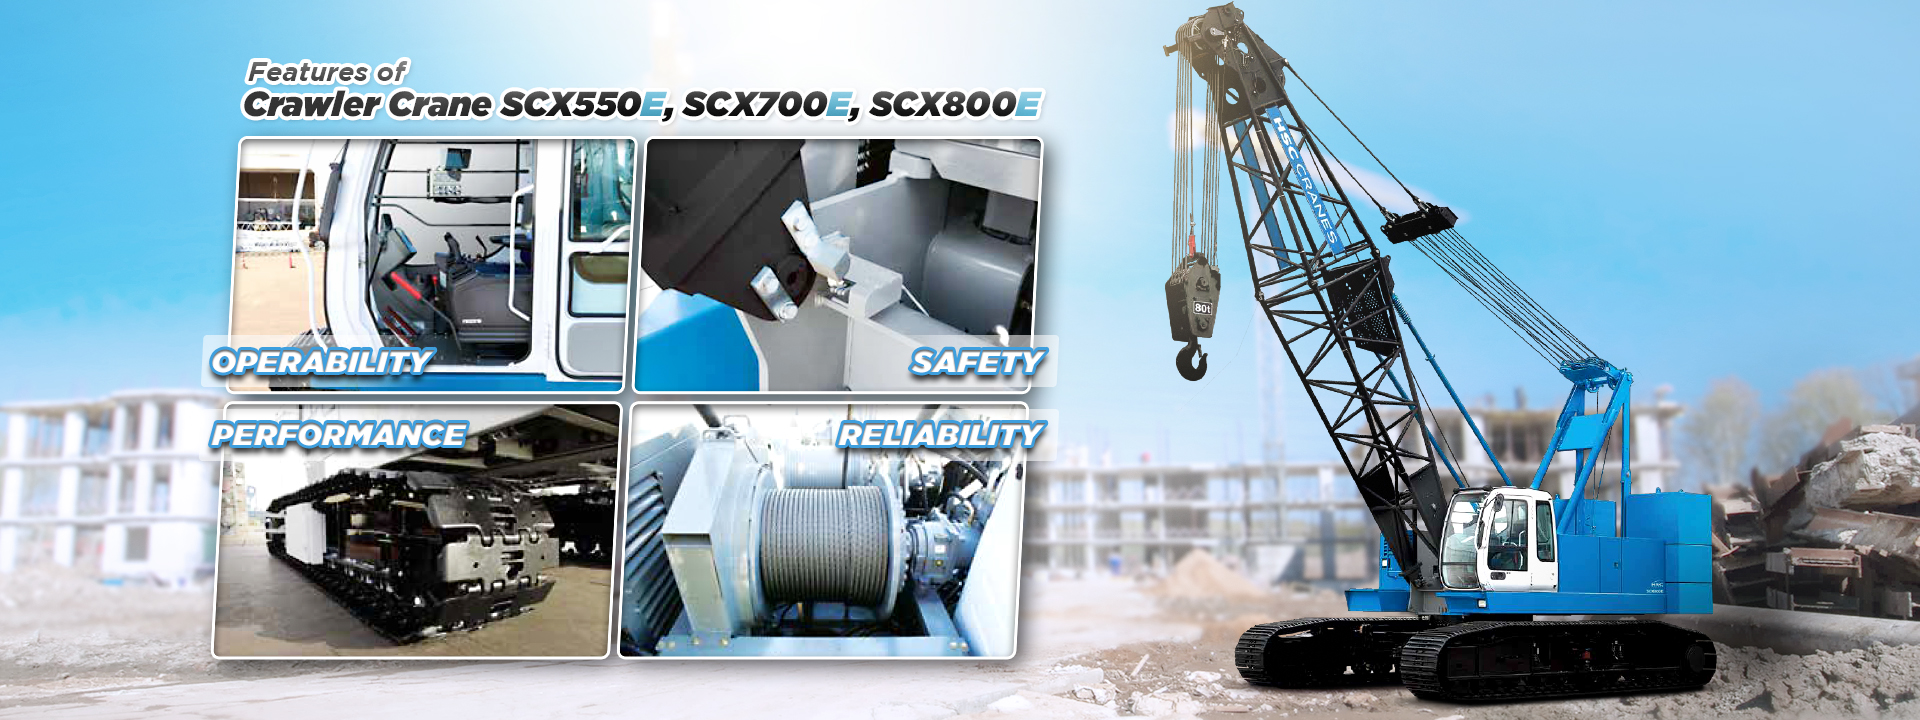 Features of crawler crane scx550e scx700e and scx800e